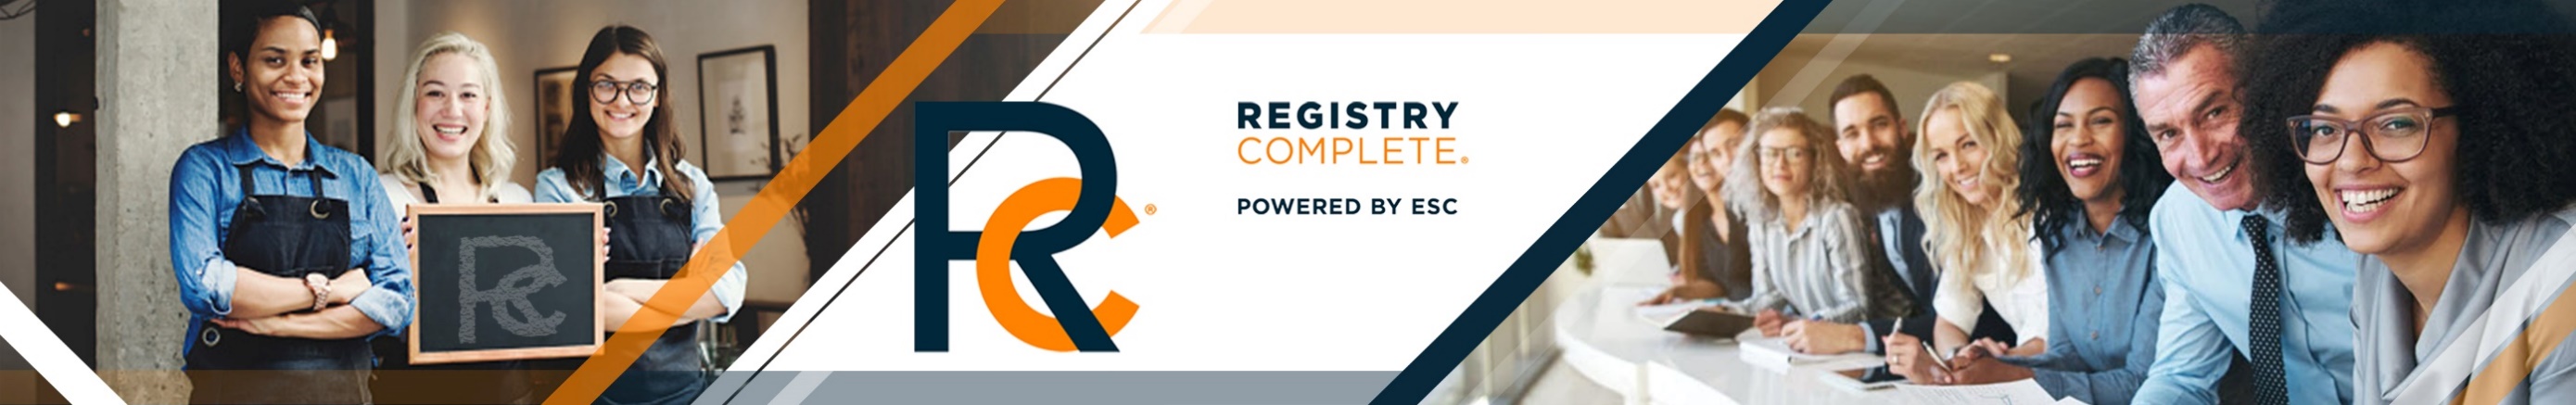 Registry Complete Banner